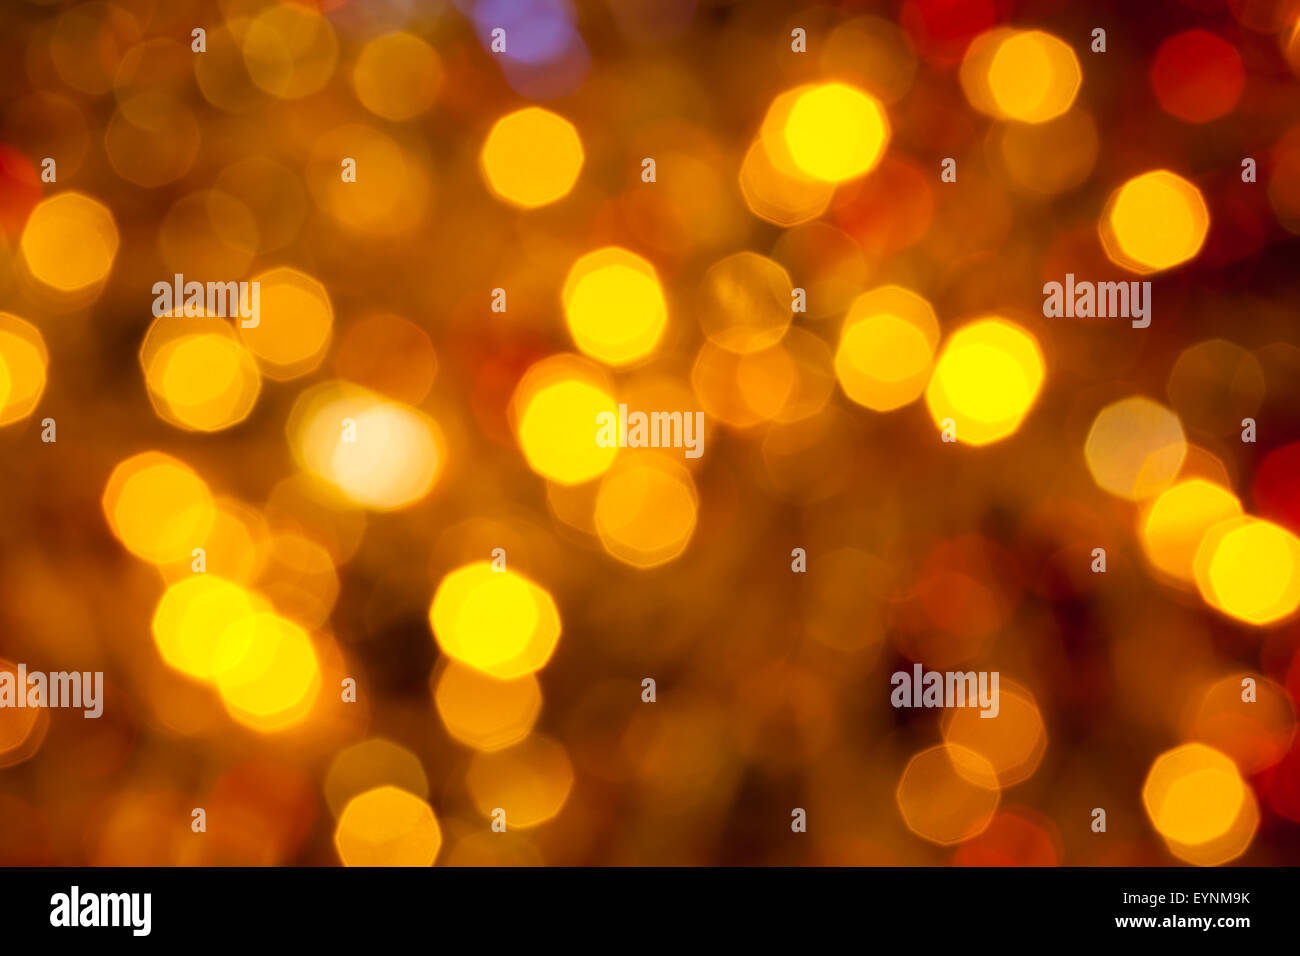 Resumen fondo borroso - marrón oscuro, amarillo y rojo el parpadeo de las luces de Navidad Guirnaldas eléctricas en Arbol de Navidad Foto de stock